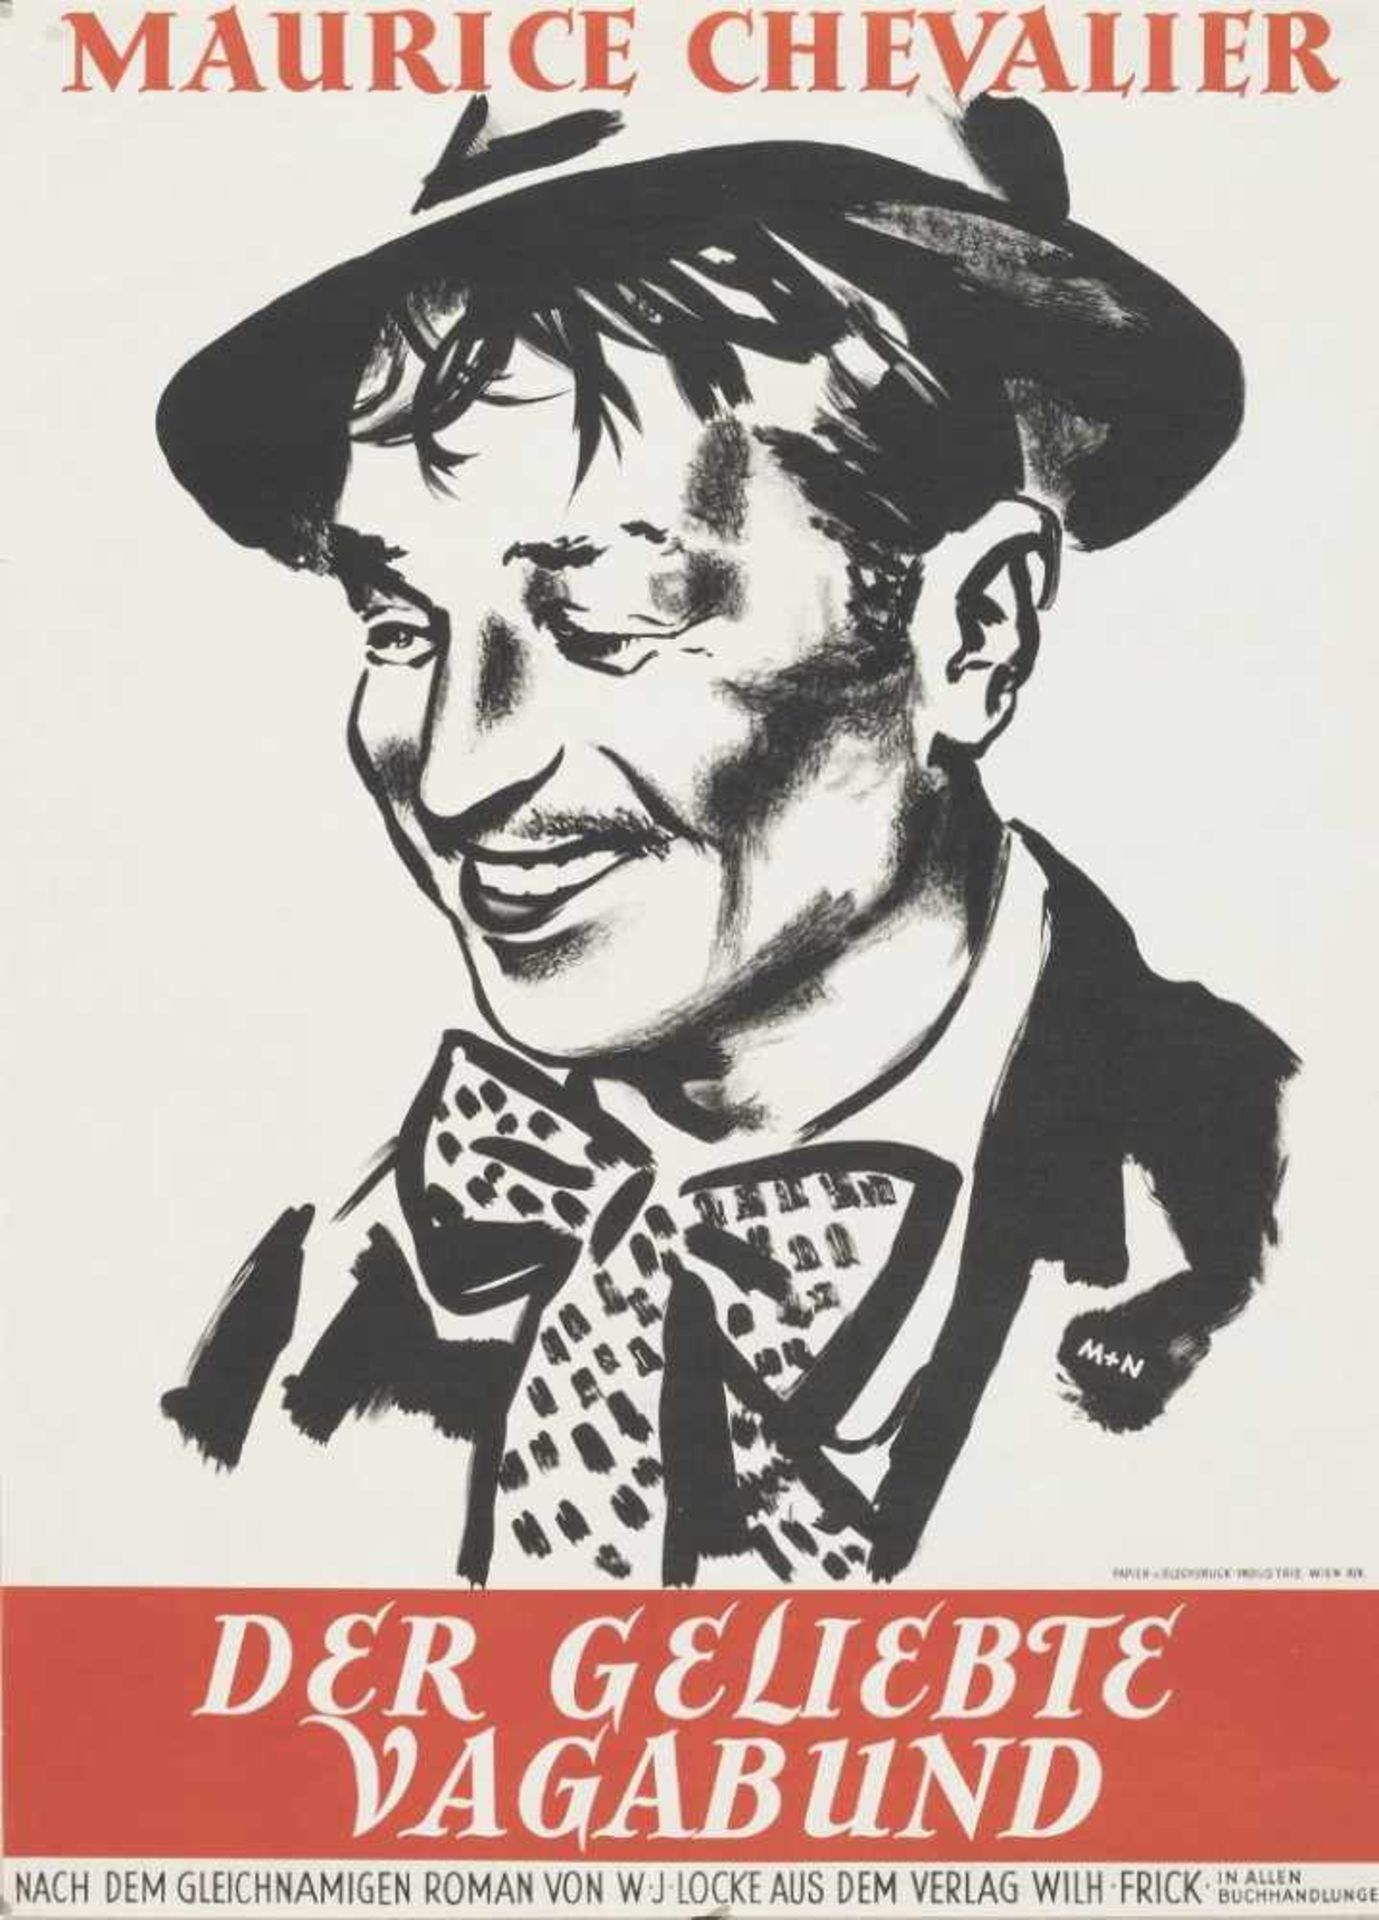 Plakat: Maurice Chevalier. Der geliebte Vagabund.